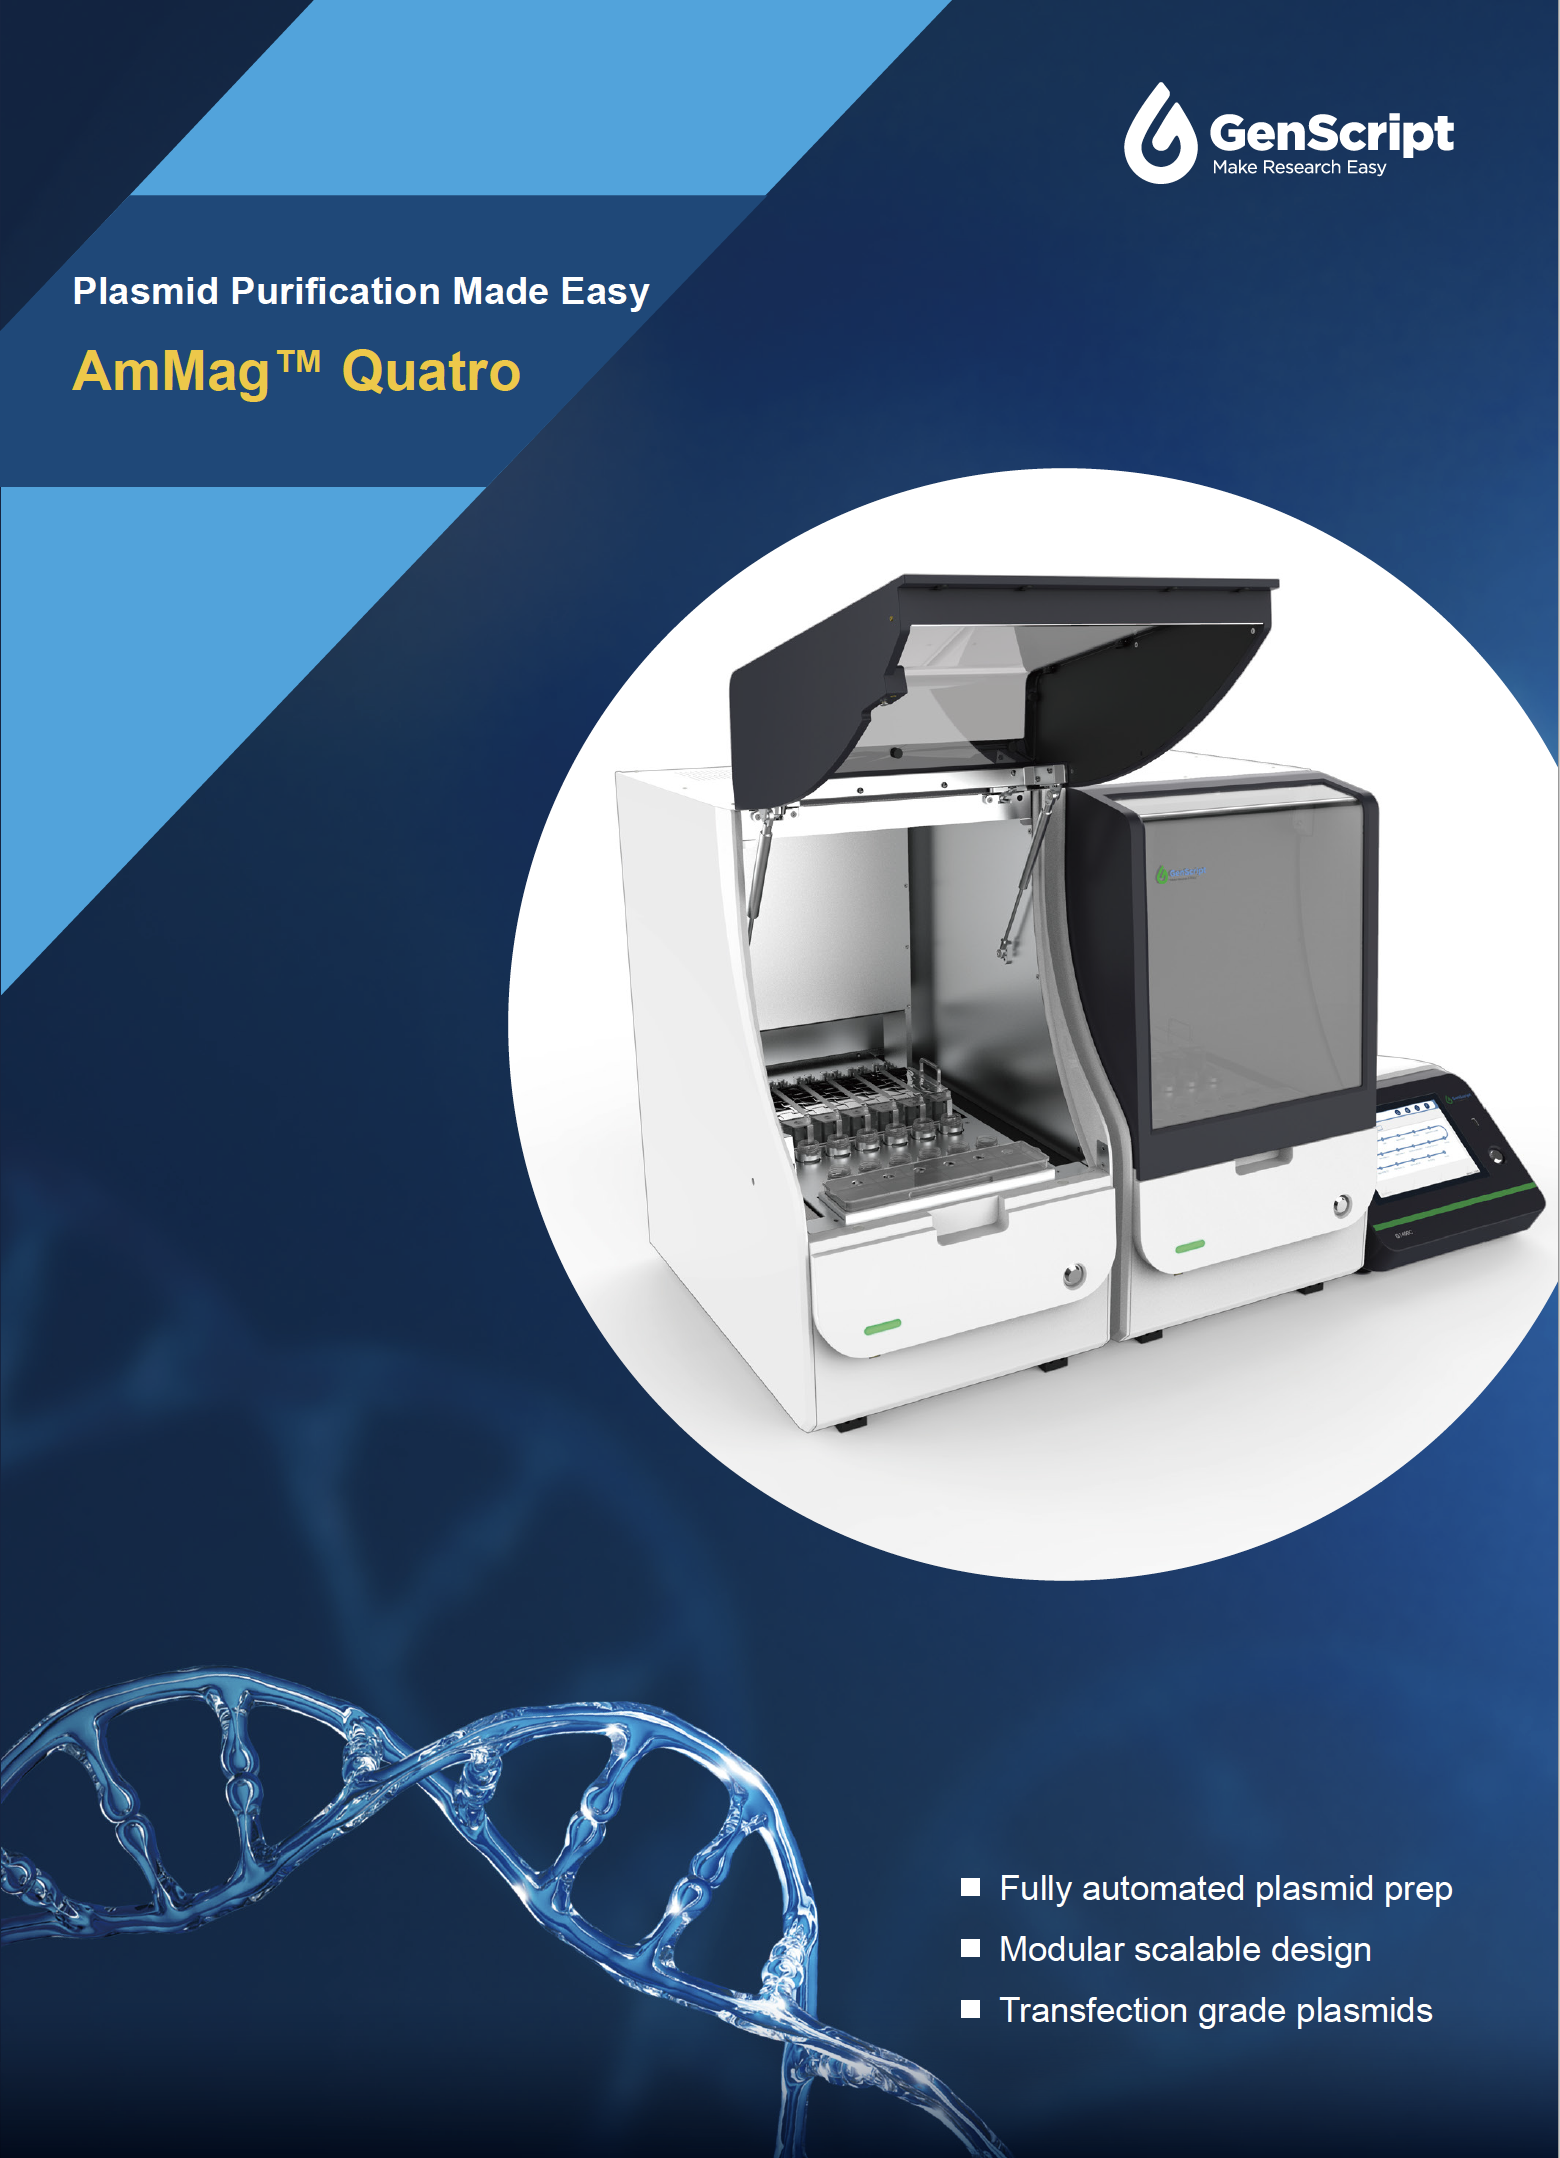 GenScript’s AmMag™ Quatro Brochure